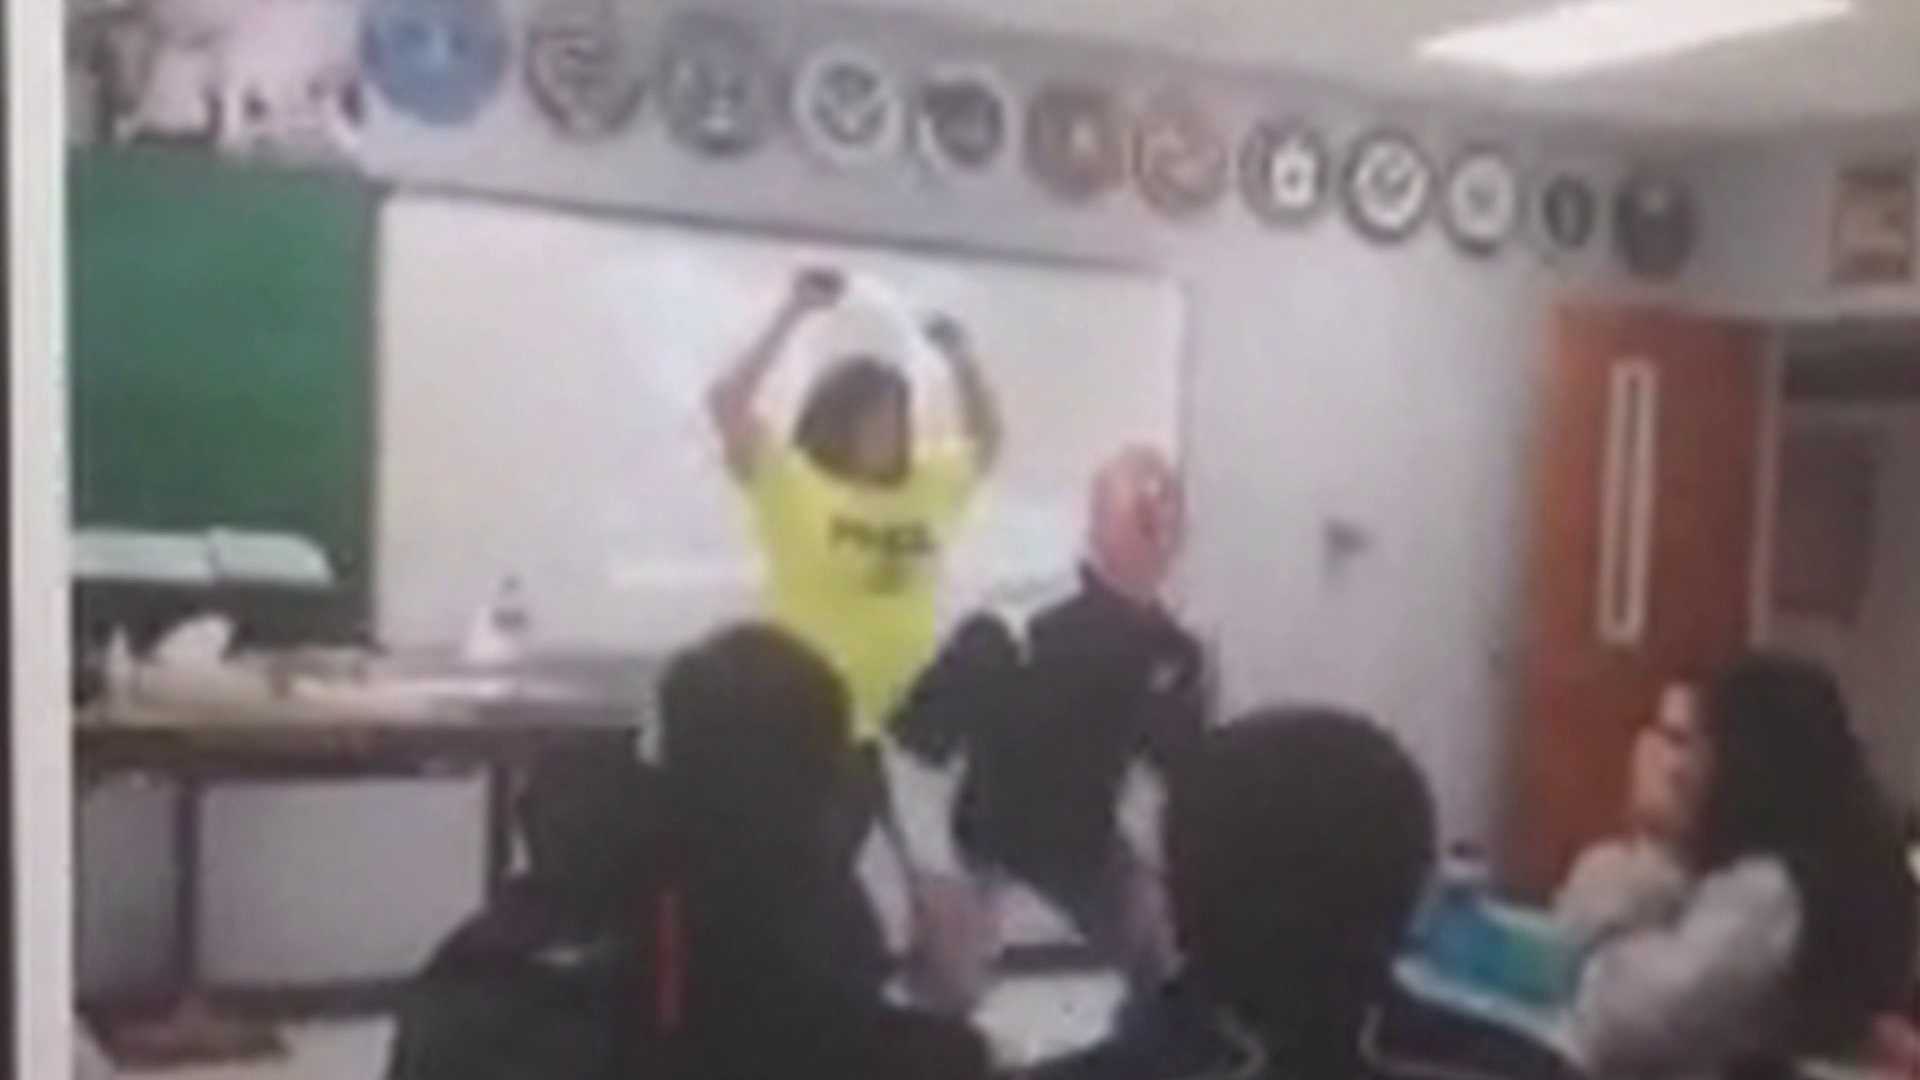 chad claxton add teacher twerking in class photo